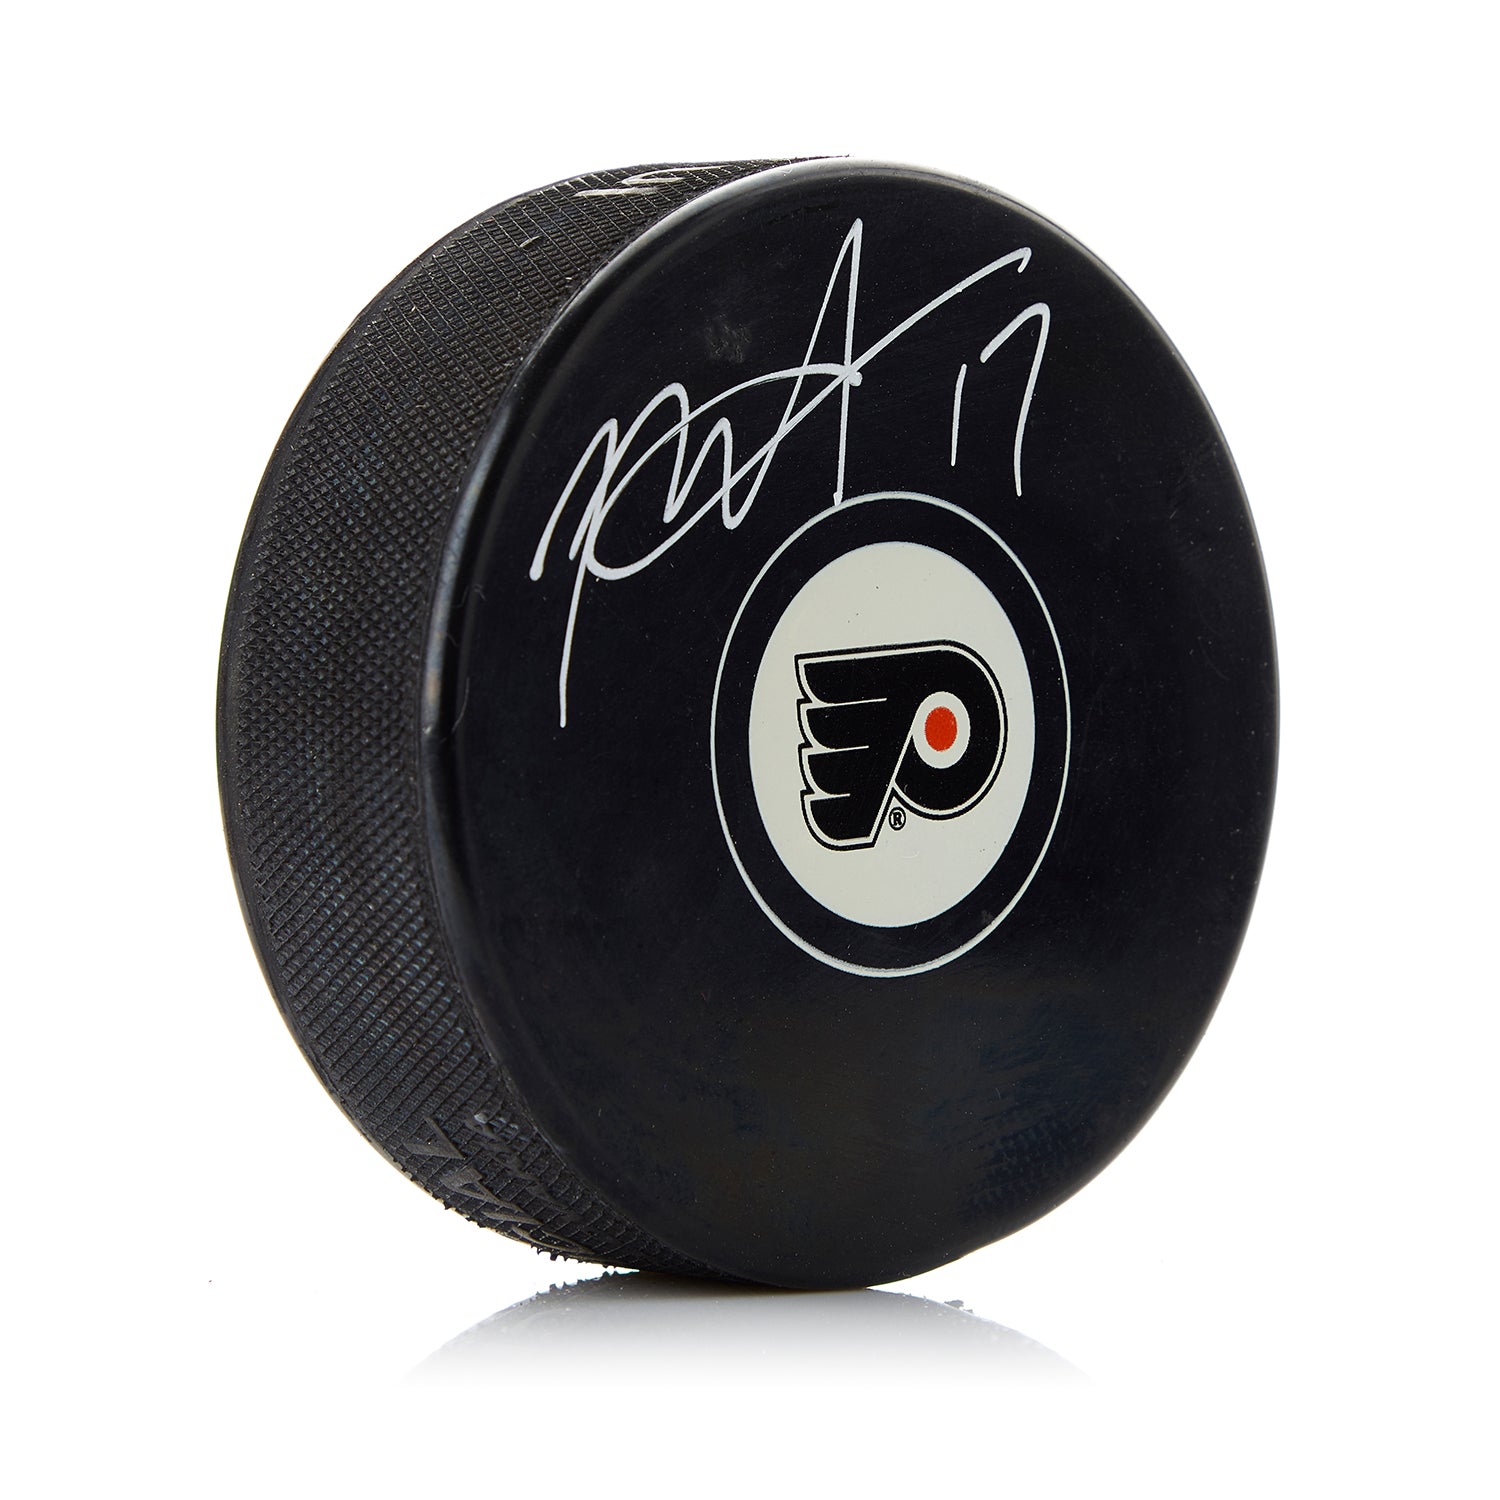 Rod Brind'Amour Philadelphia Flyers Autographed Hockey Puck